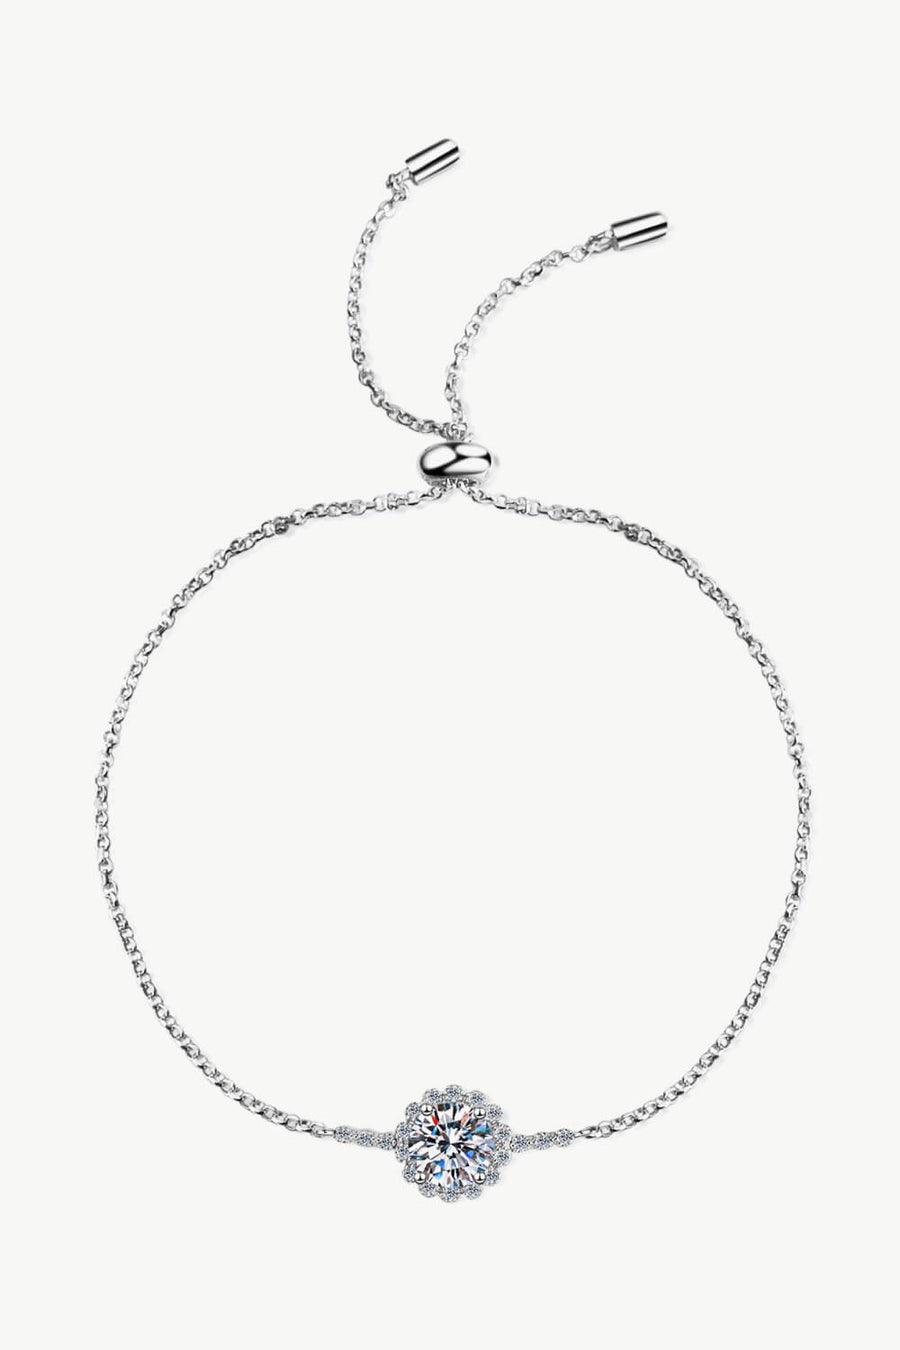 Best Diamond Bracelet Jewelry Gifts for Women | 1 Carat Round Diamond Chain Bracelet | MASON New York